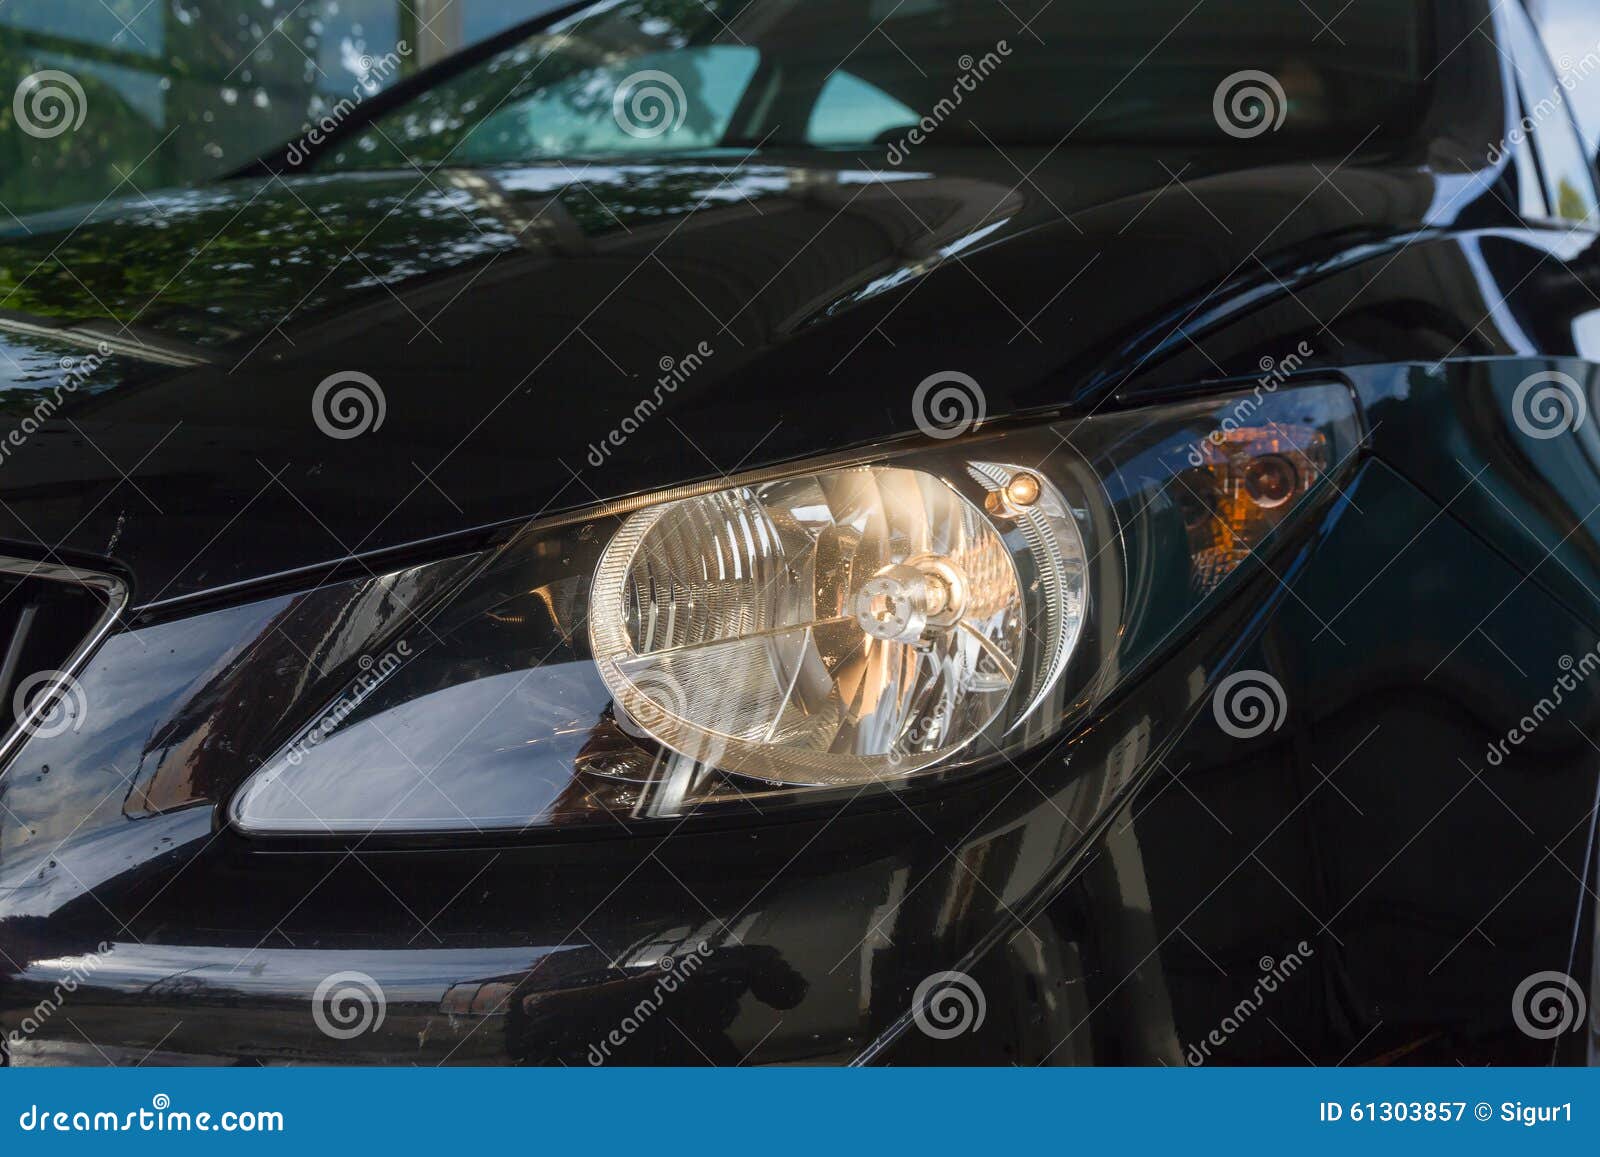 spotlight on black car